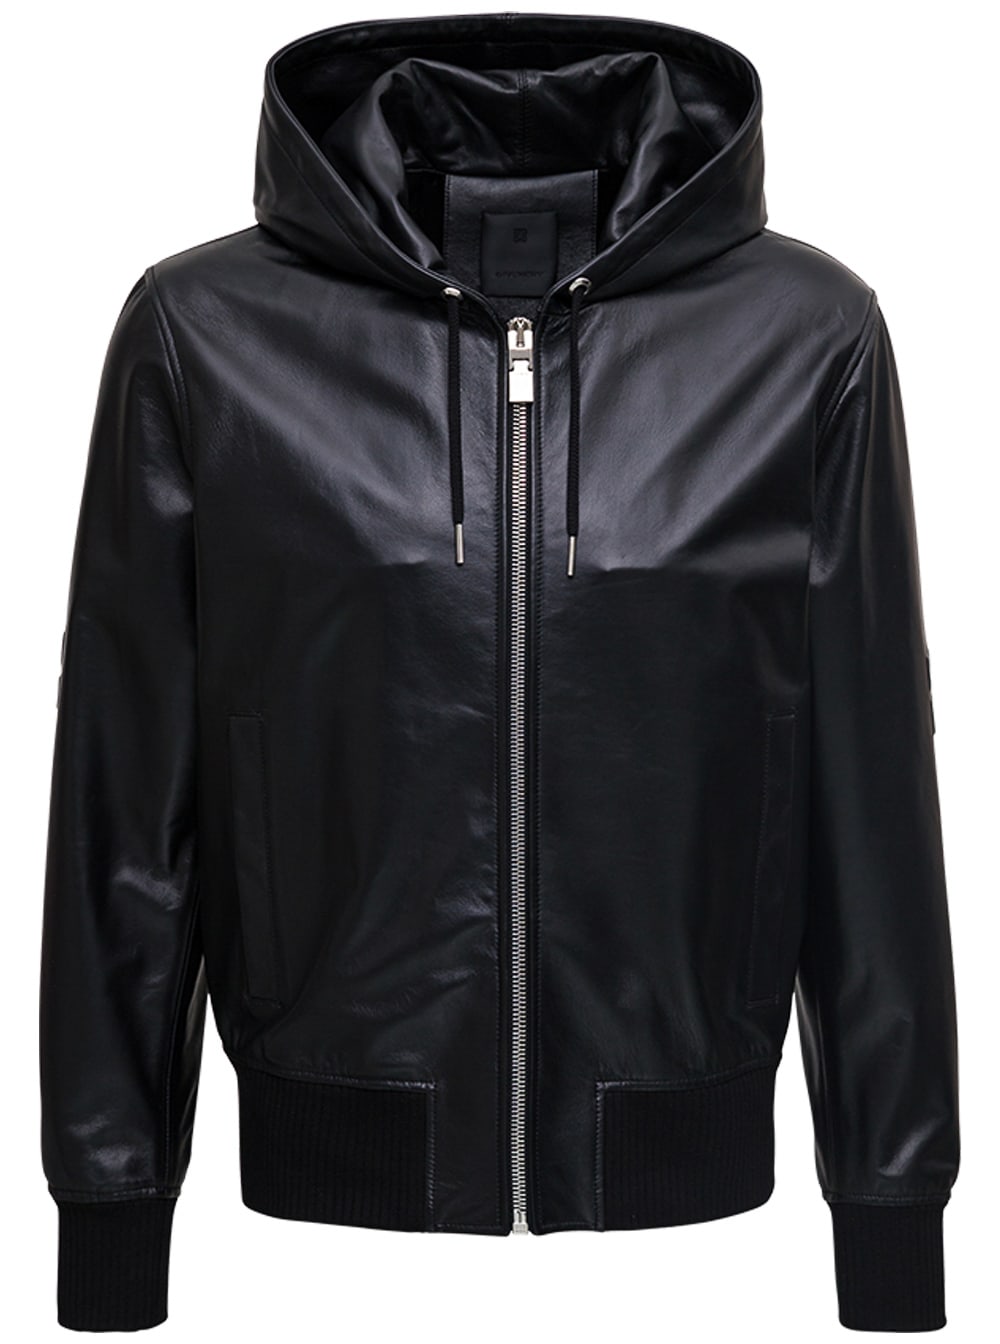 Givenchy 4g Black Leather Jacket